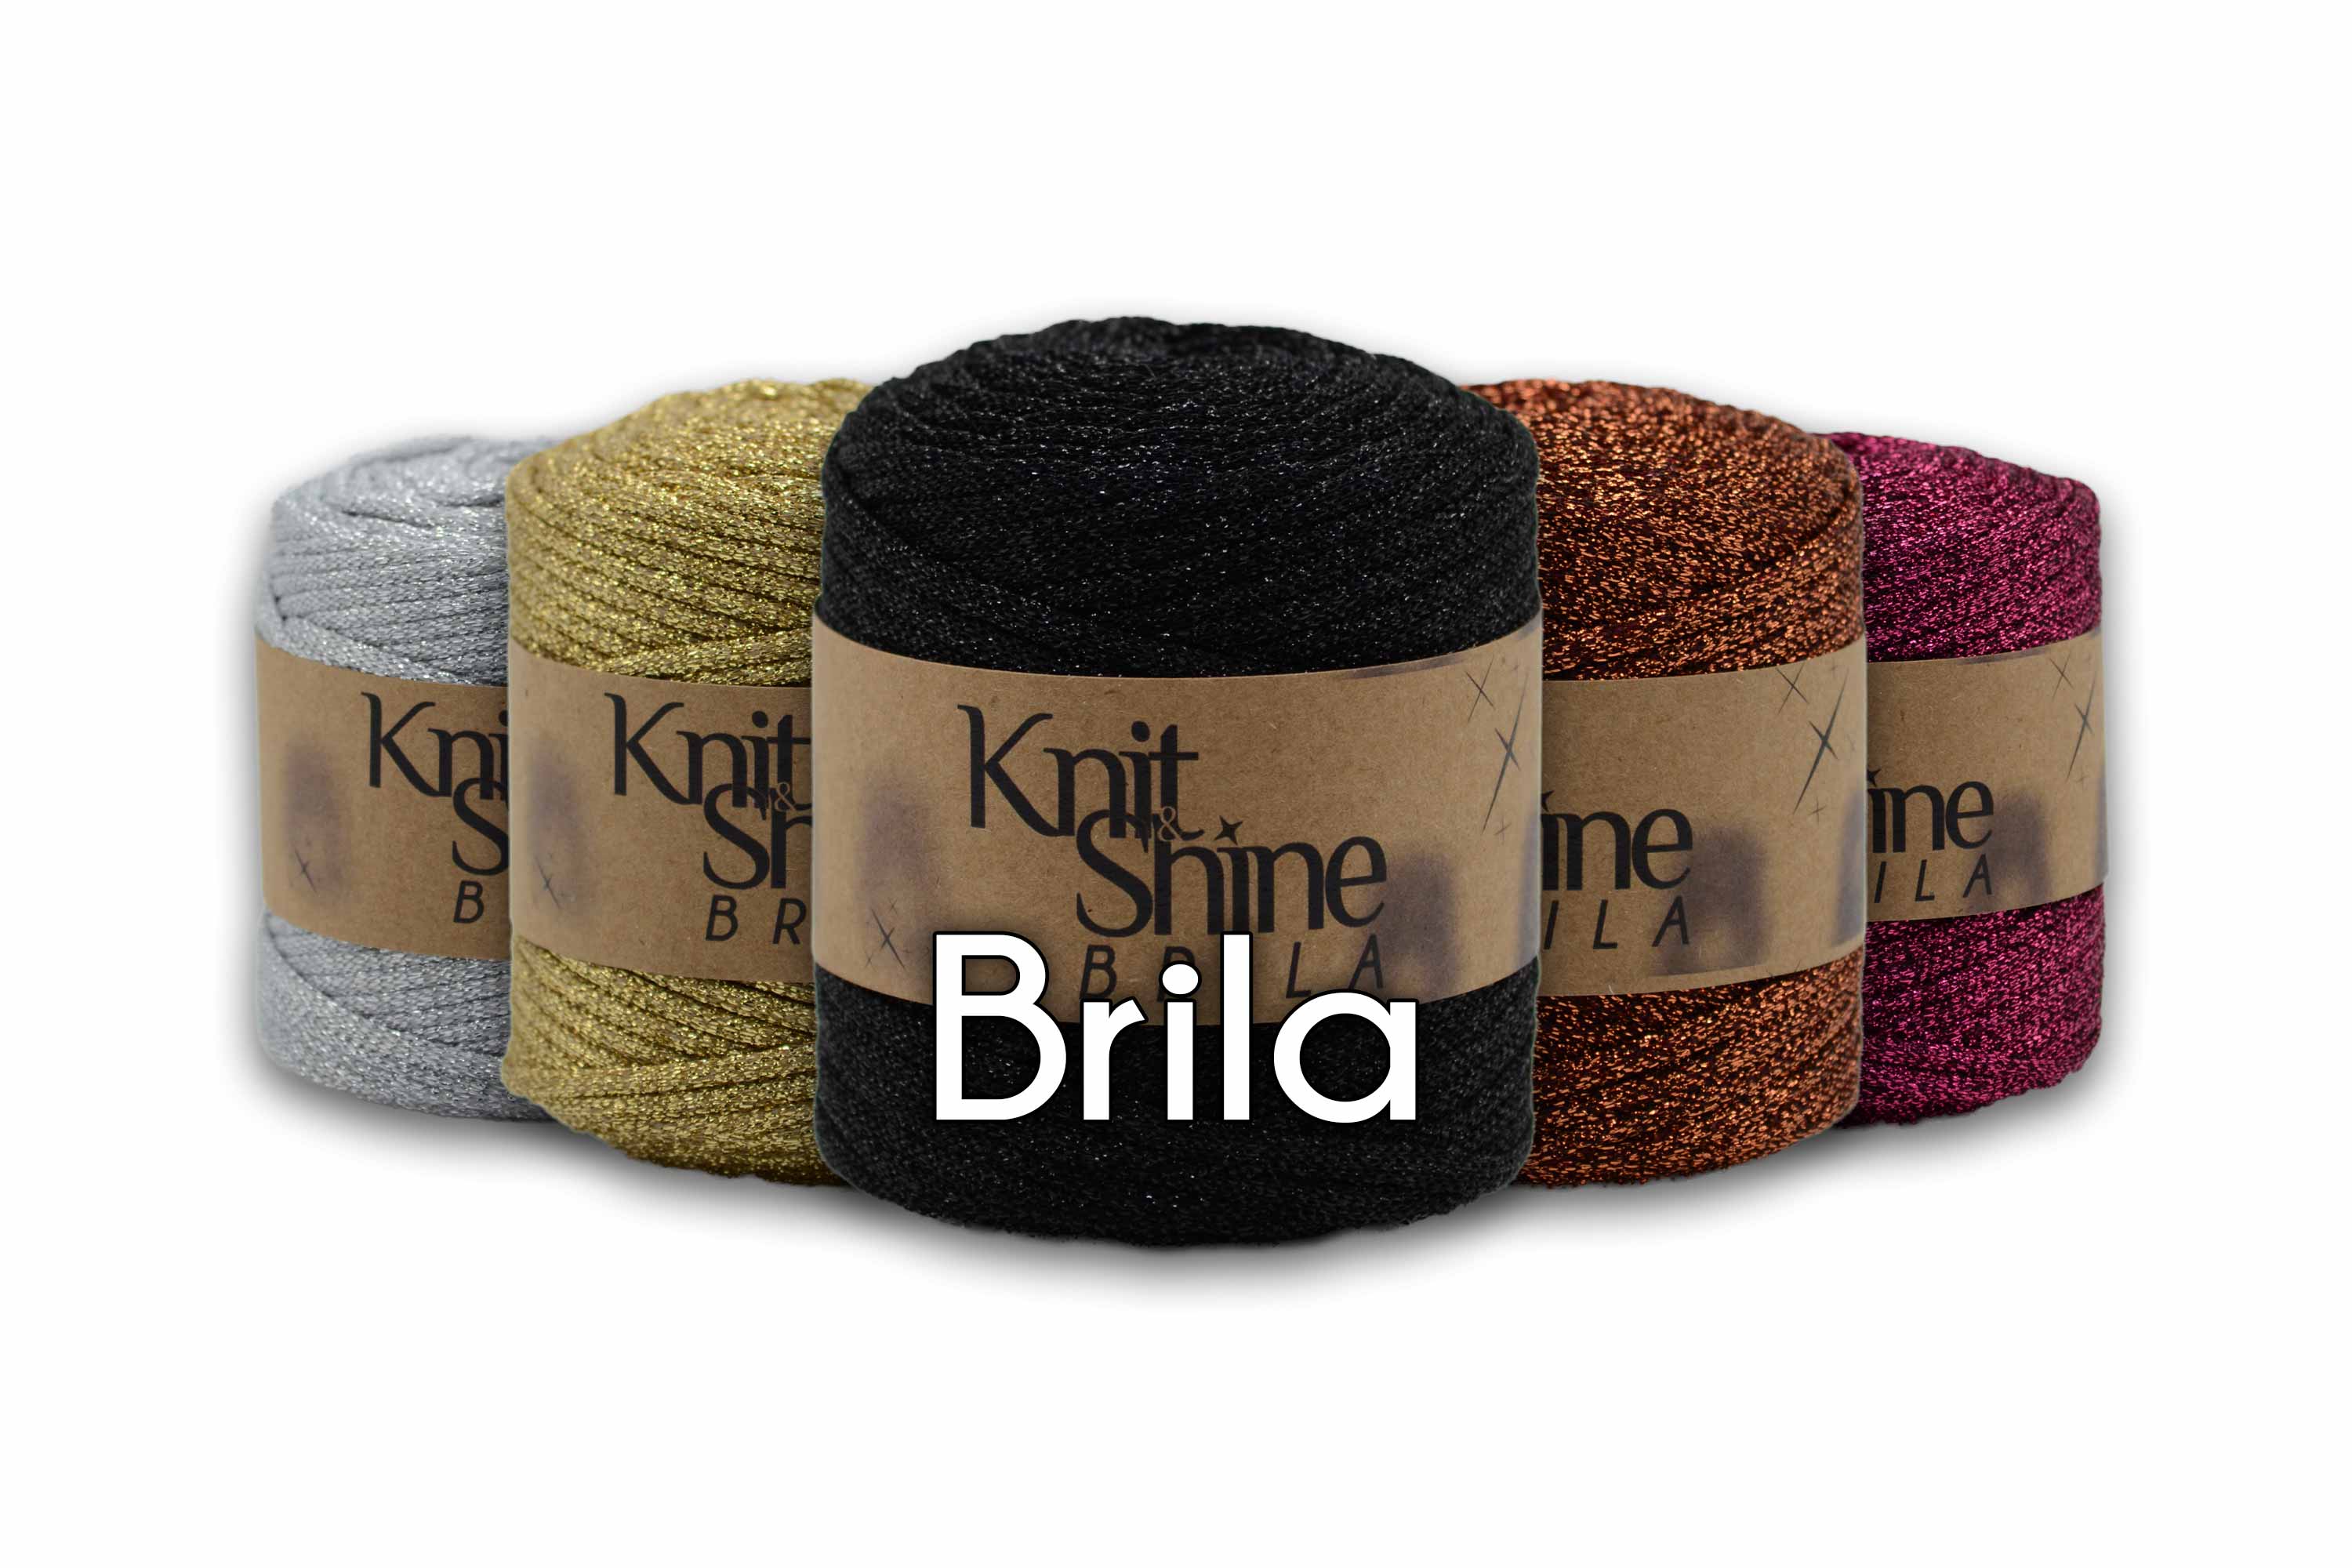 metallic yarn brila metallic and cotton yarn knit and shine knit & shine yarns bugeto yarn